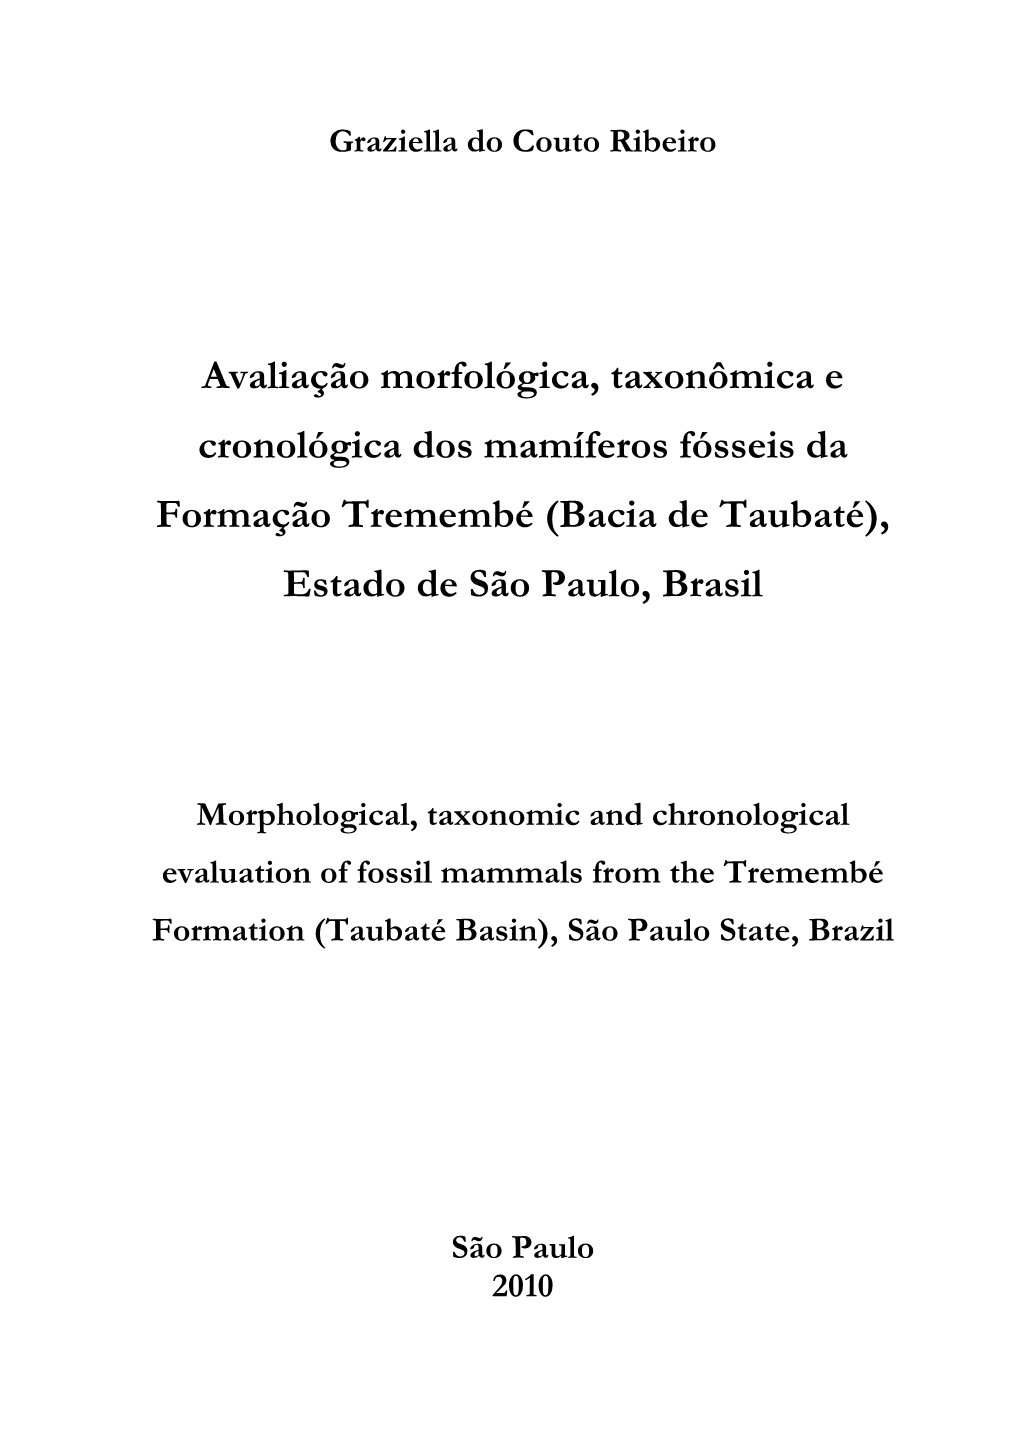 Avaliação Morfológica, Taxonômica E Cronológica Dos Mamíferos Fósseis Da Formação Tremembé (Bacia De Taubaté), Estado De São Paulo, Brasil